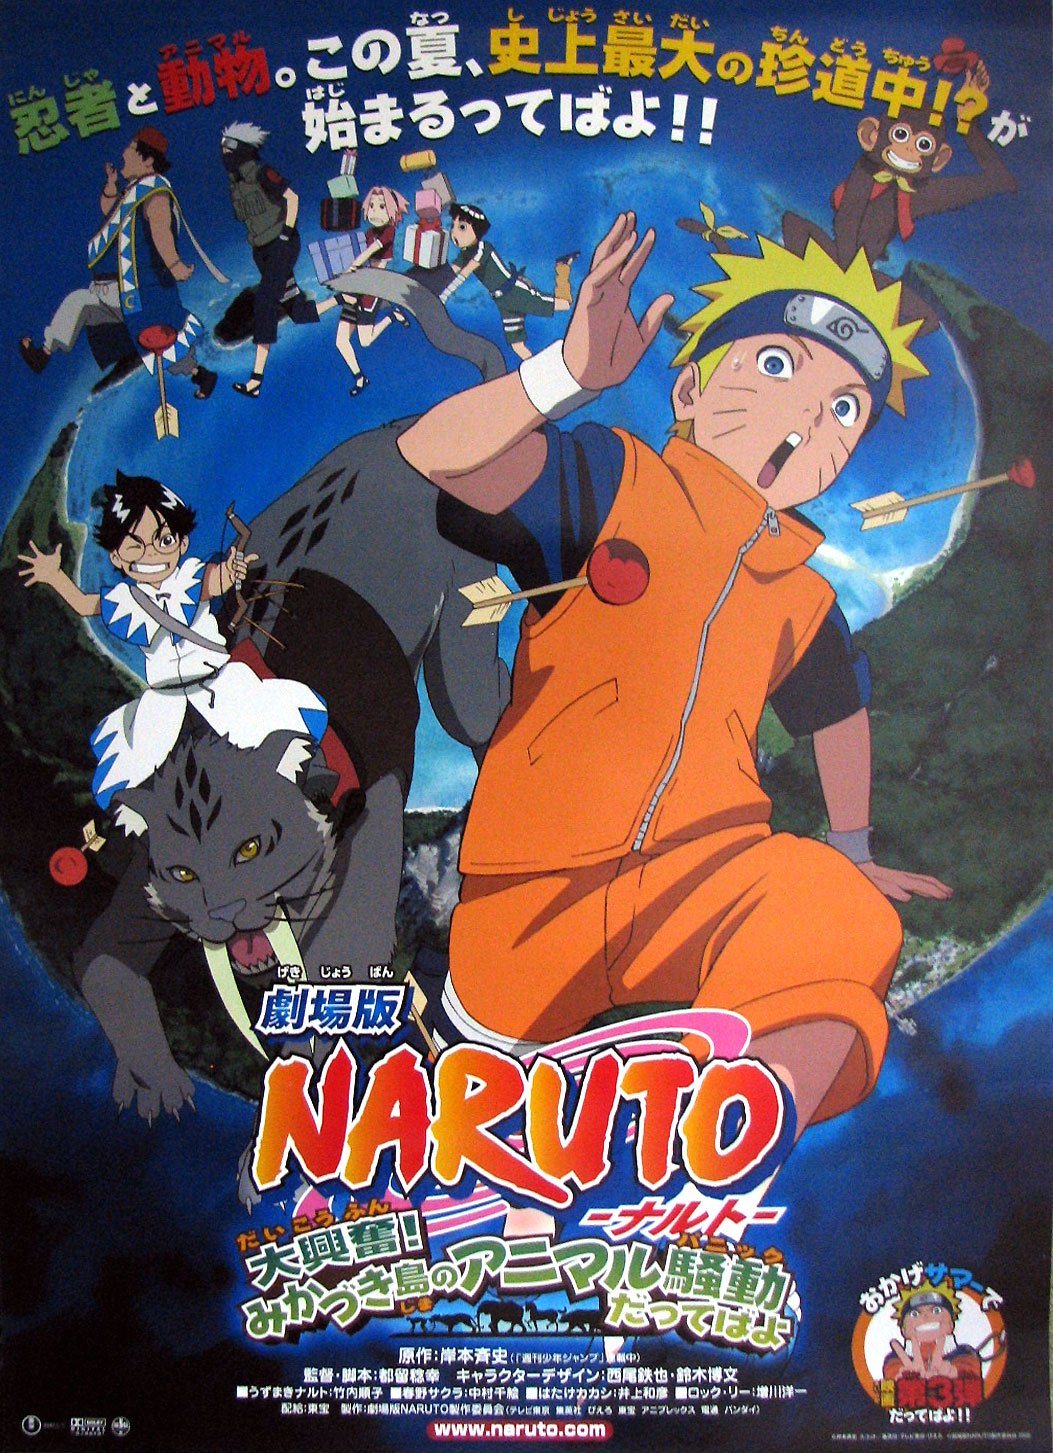 ดูหนังออนไลน์ Naruto The Movie 3 (2006) เกาะเสี้ยวจันทรา หนังมาสเตอร์ หนังเต็มเรื่อง ดูหนังฟรีออนไลน์ ดูหนังออนไลน์ หนังออนไลน์ ดูหนังใหม่ หนังพากย์ไทย หนังซับไทย ดูฟรีHD